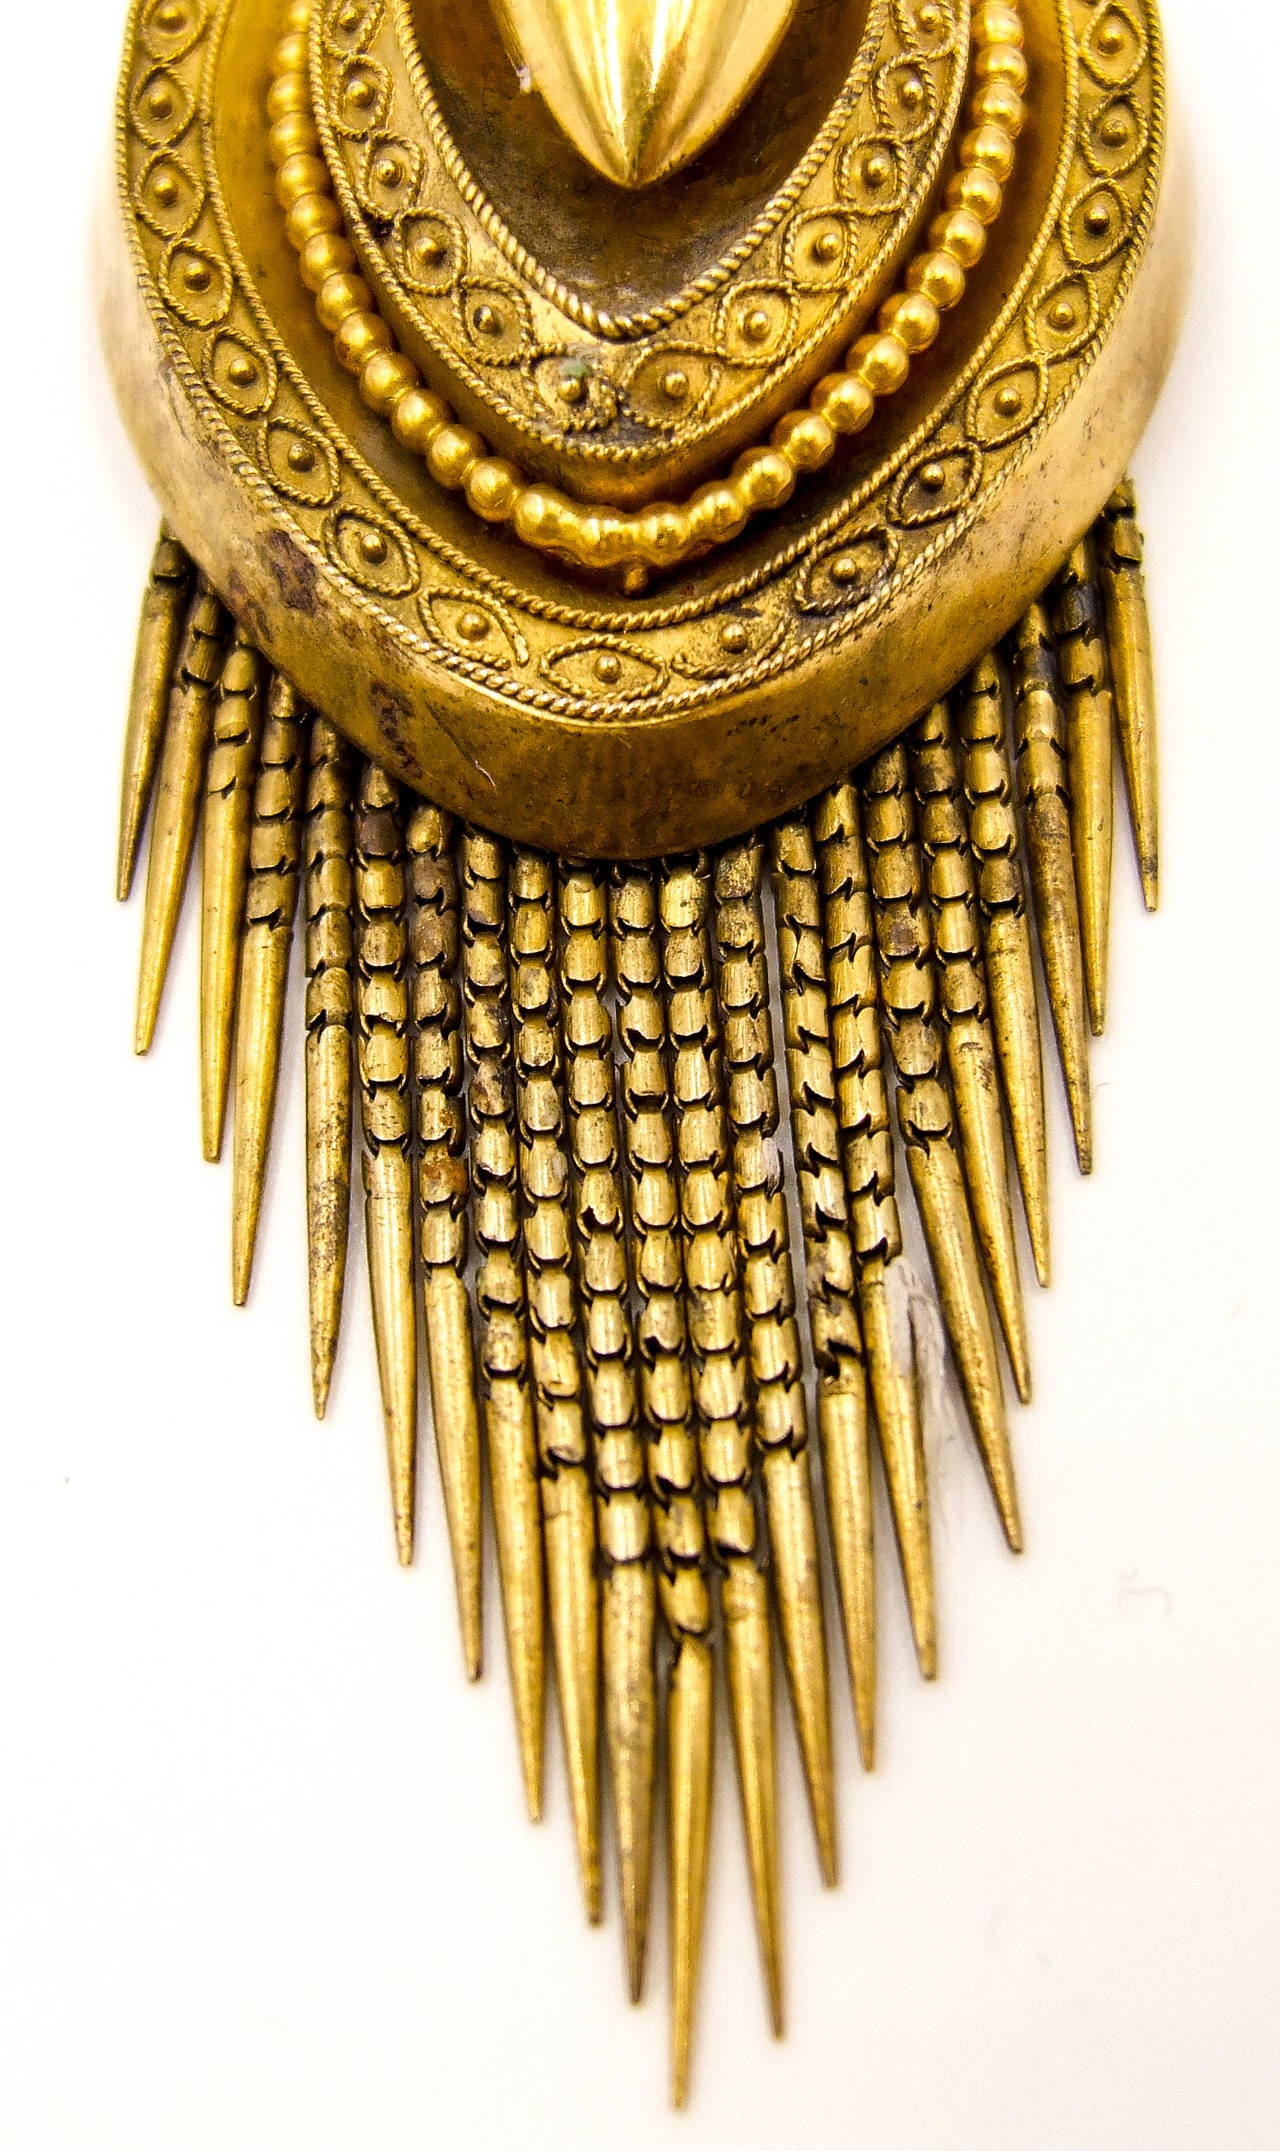 Viktorianische Eleganz in einem stilvollen, mit Granulation verzierten Anhänger.  Im hinteren Fach befinden sich zwei verschiedenfarbige Haarlocken, während die Vorderseite mit einem abgestuften, handgefertigten Goldrand versehen ist.